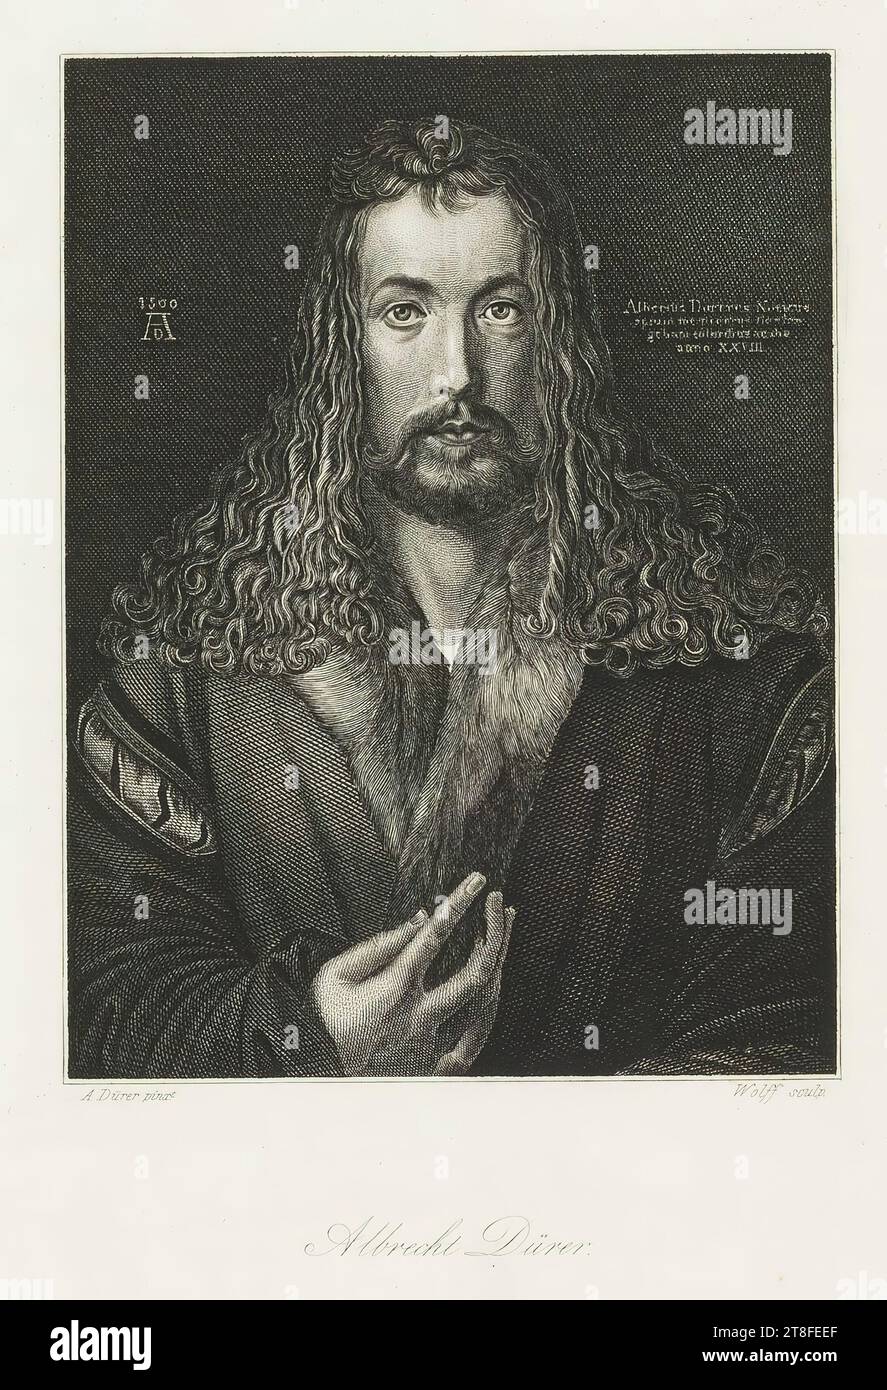 1500 d.C. Albertus Durerus Noricus, ho ritratto me stesso nei colori della mia età, nell'anno 28. A. Dürer pinxt. Scultura Wolff. Albrecht Dürer. Pubblicato per i proprietari da A.H. Payne, Dresden & Leipzig Foto Stock